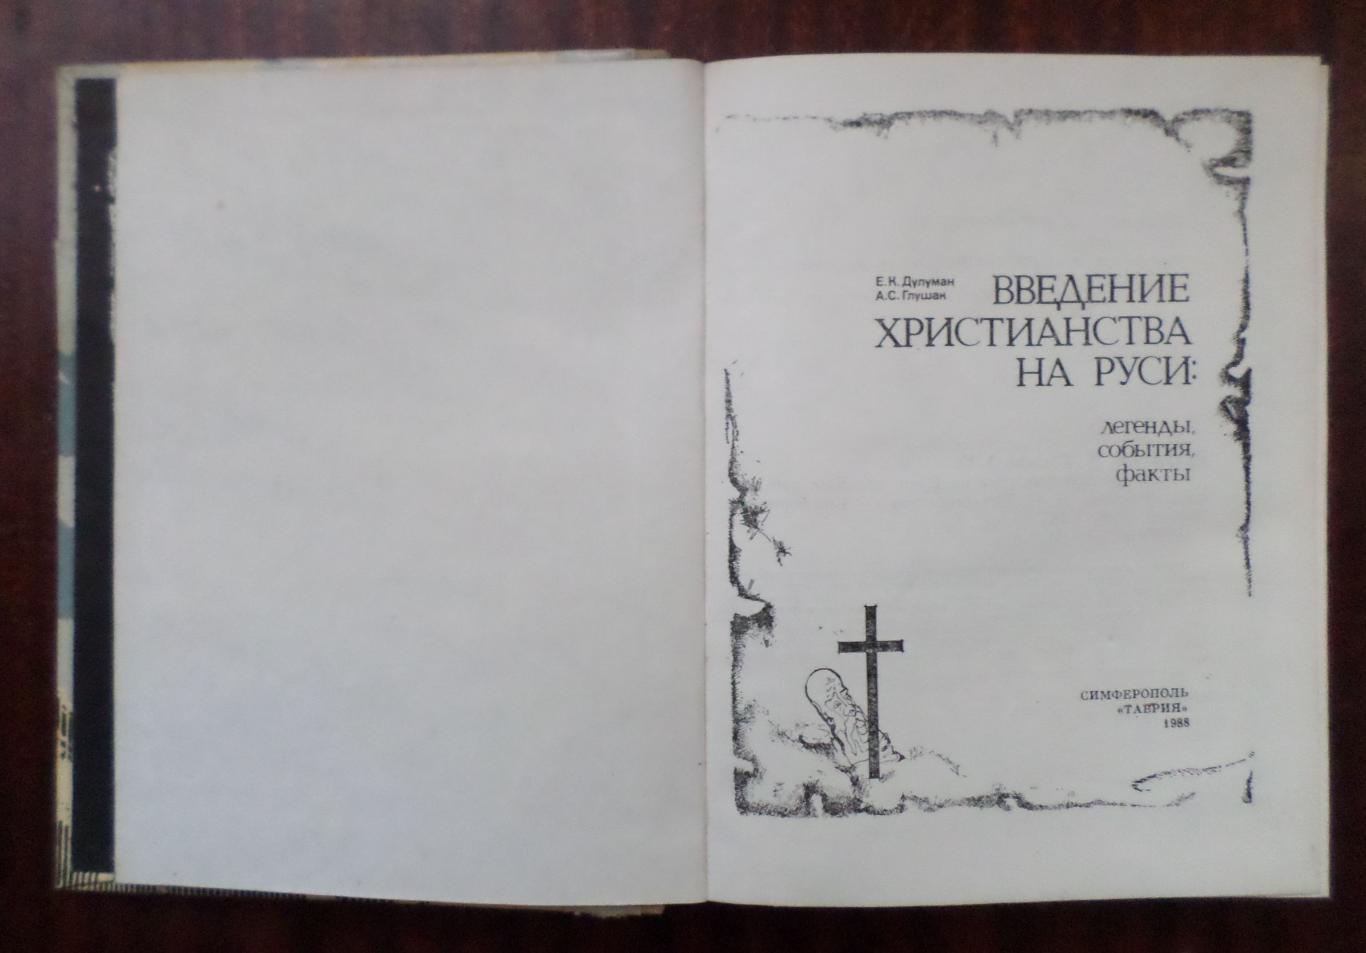 Введение христианства на Руси: легенды, события, факты. 1988 г. 1